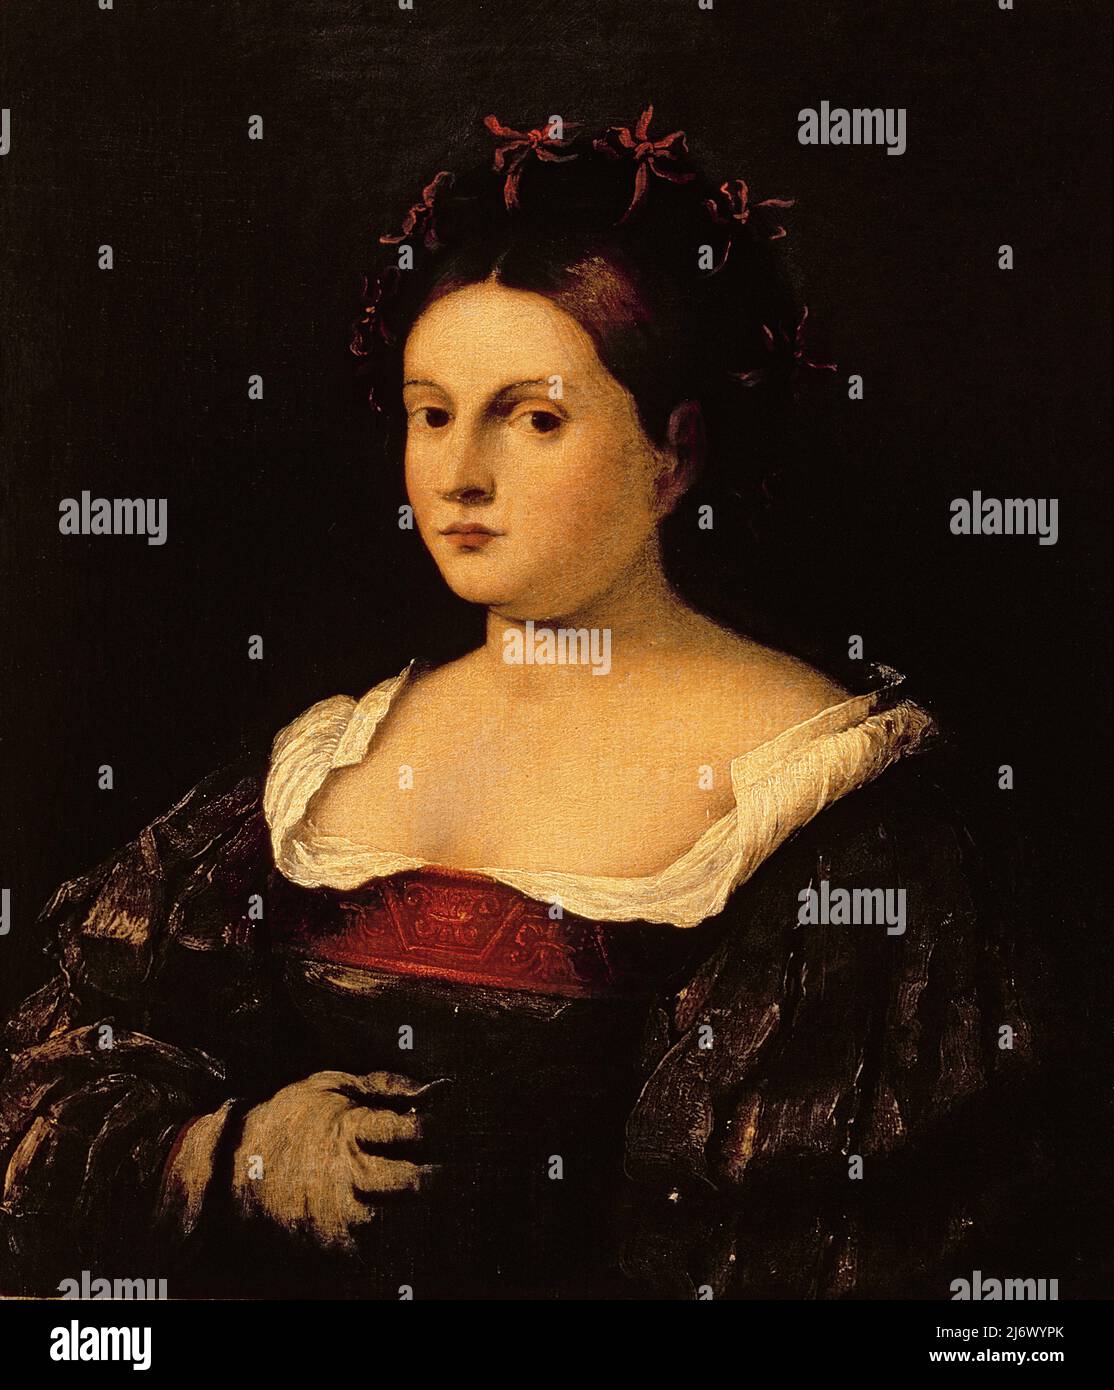 Ritratto di una donna di Pitati, Bonifazio de' (Bonifacio Veronese) (c.1487-1553); Palazzo Pitti, Firenze, Italia; Italiano, fuori dal copyright. Foto Stock